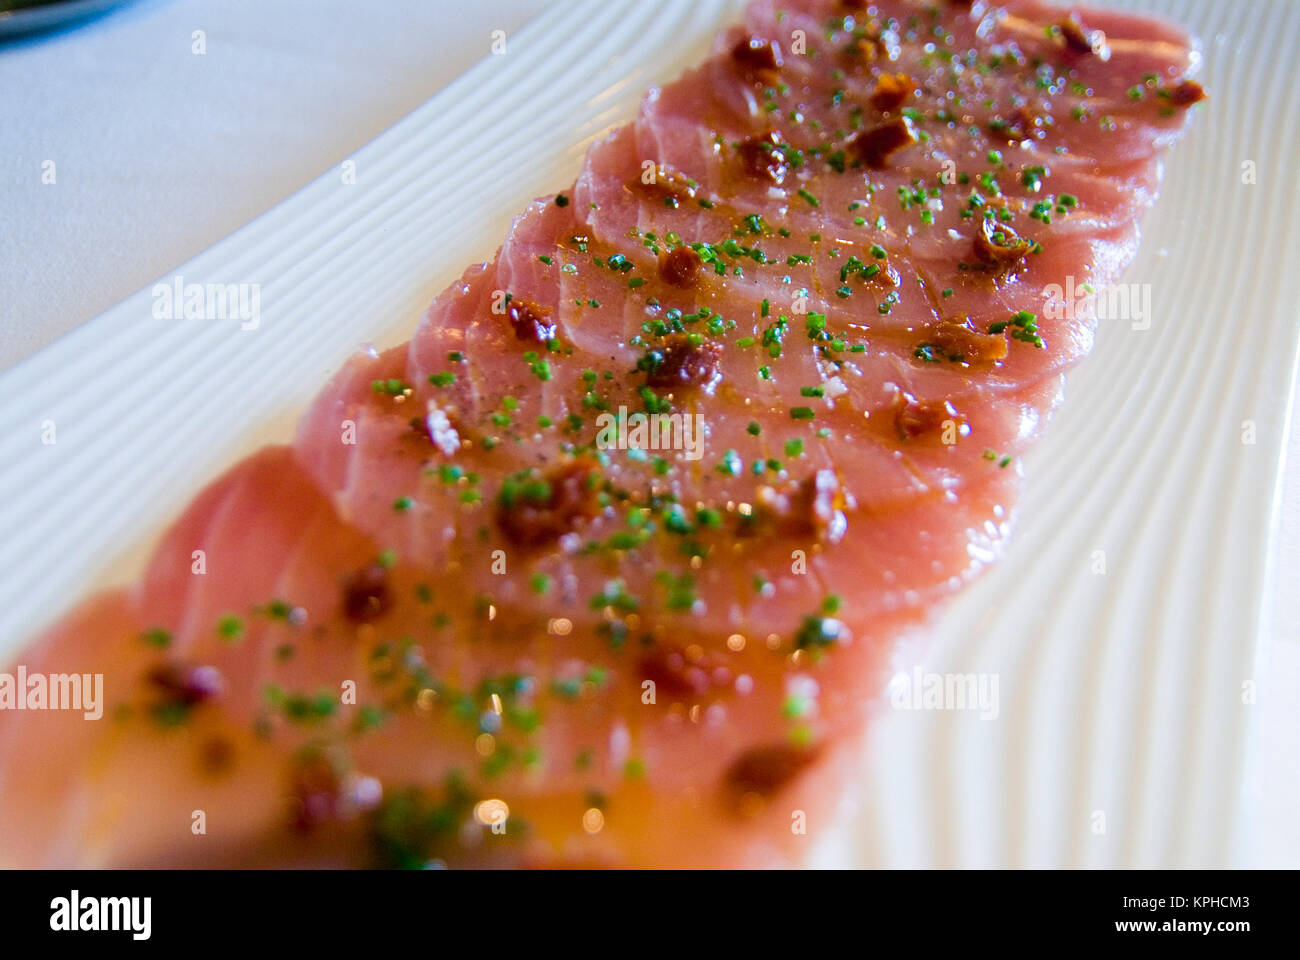 Principado de Mónaco, el hotel Metropol, Robuchon restaurante, plato de salmón Foto de stock